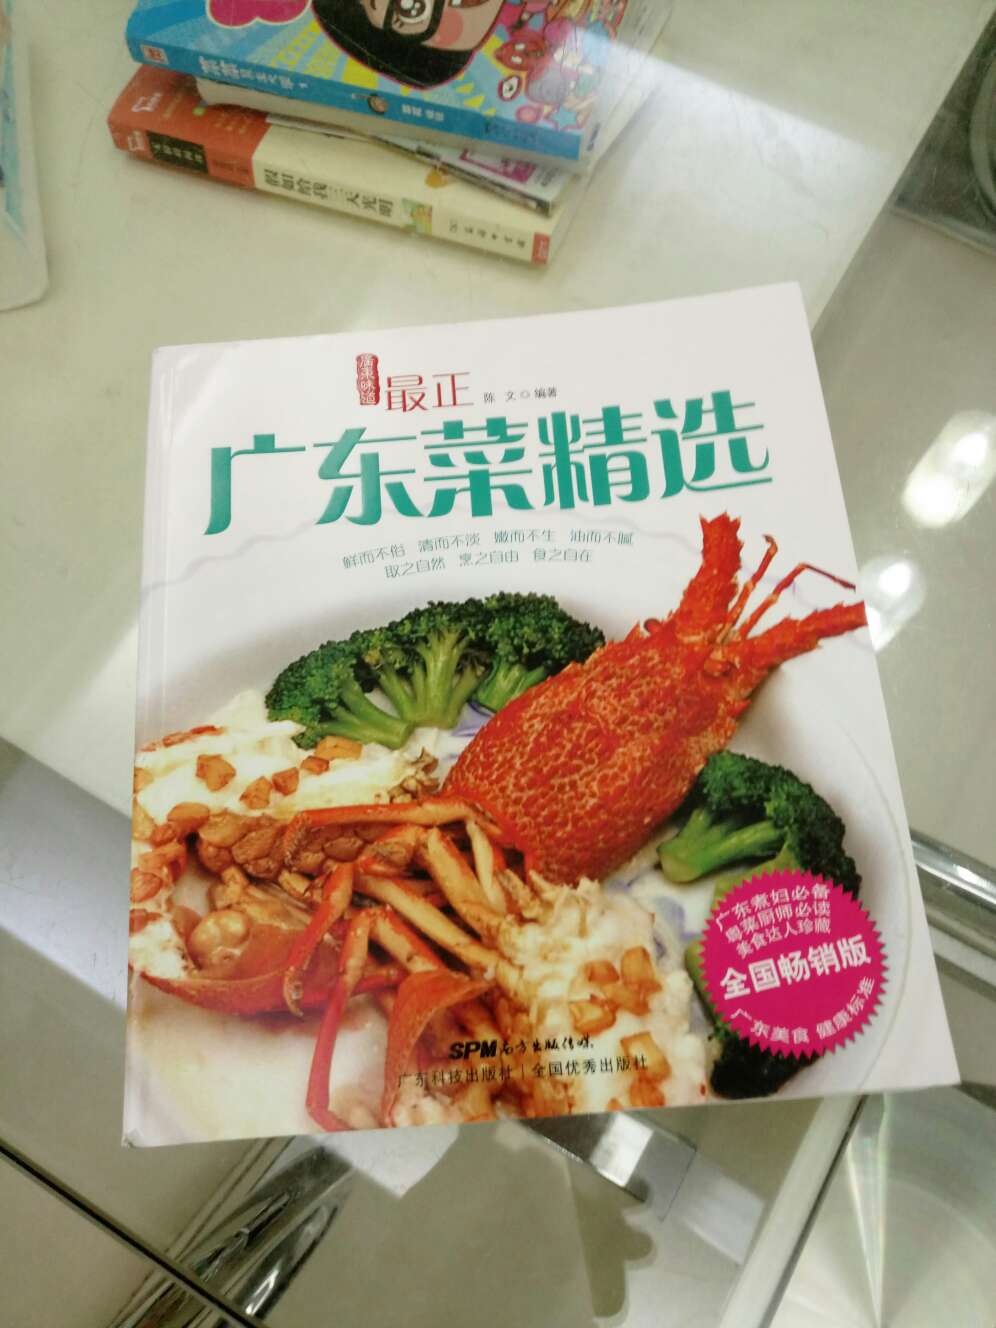 呵呵，家里女人要求买的，说要学做饭。这书值得买。